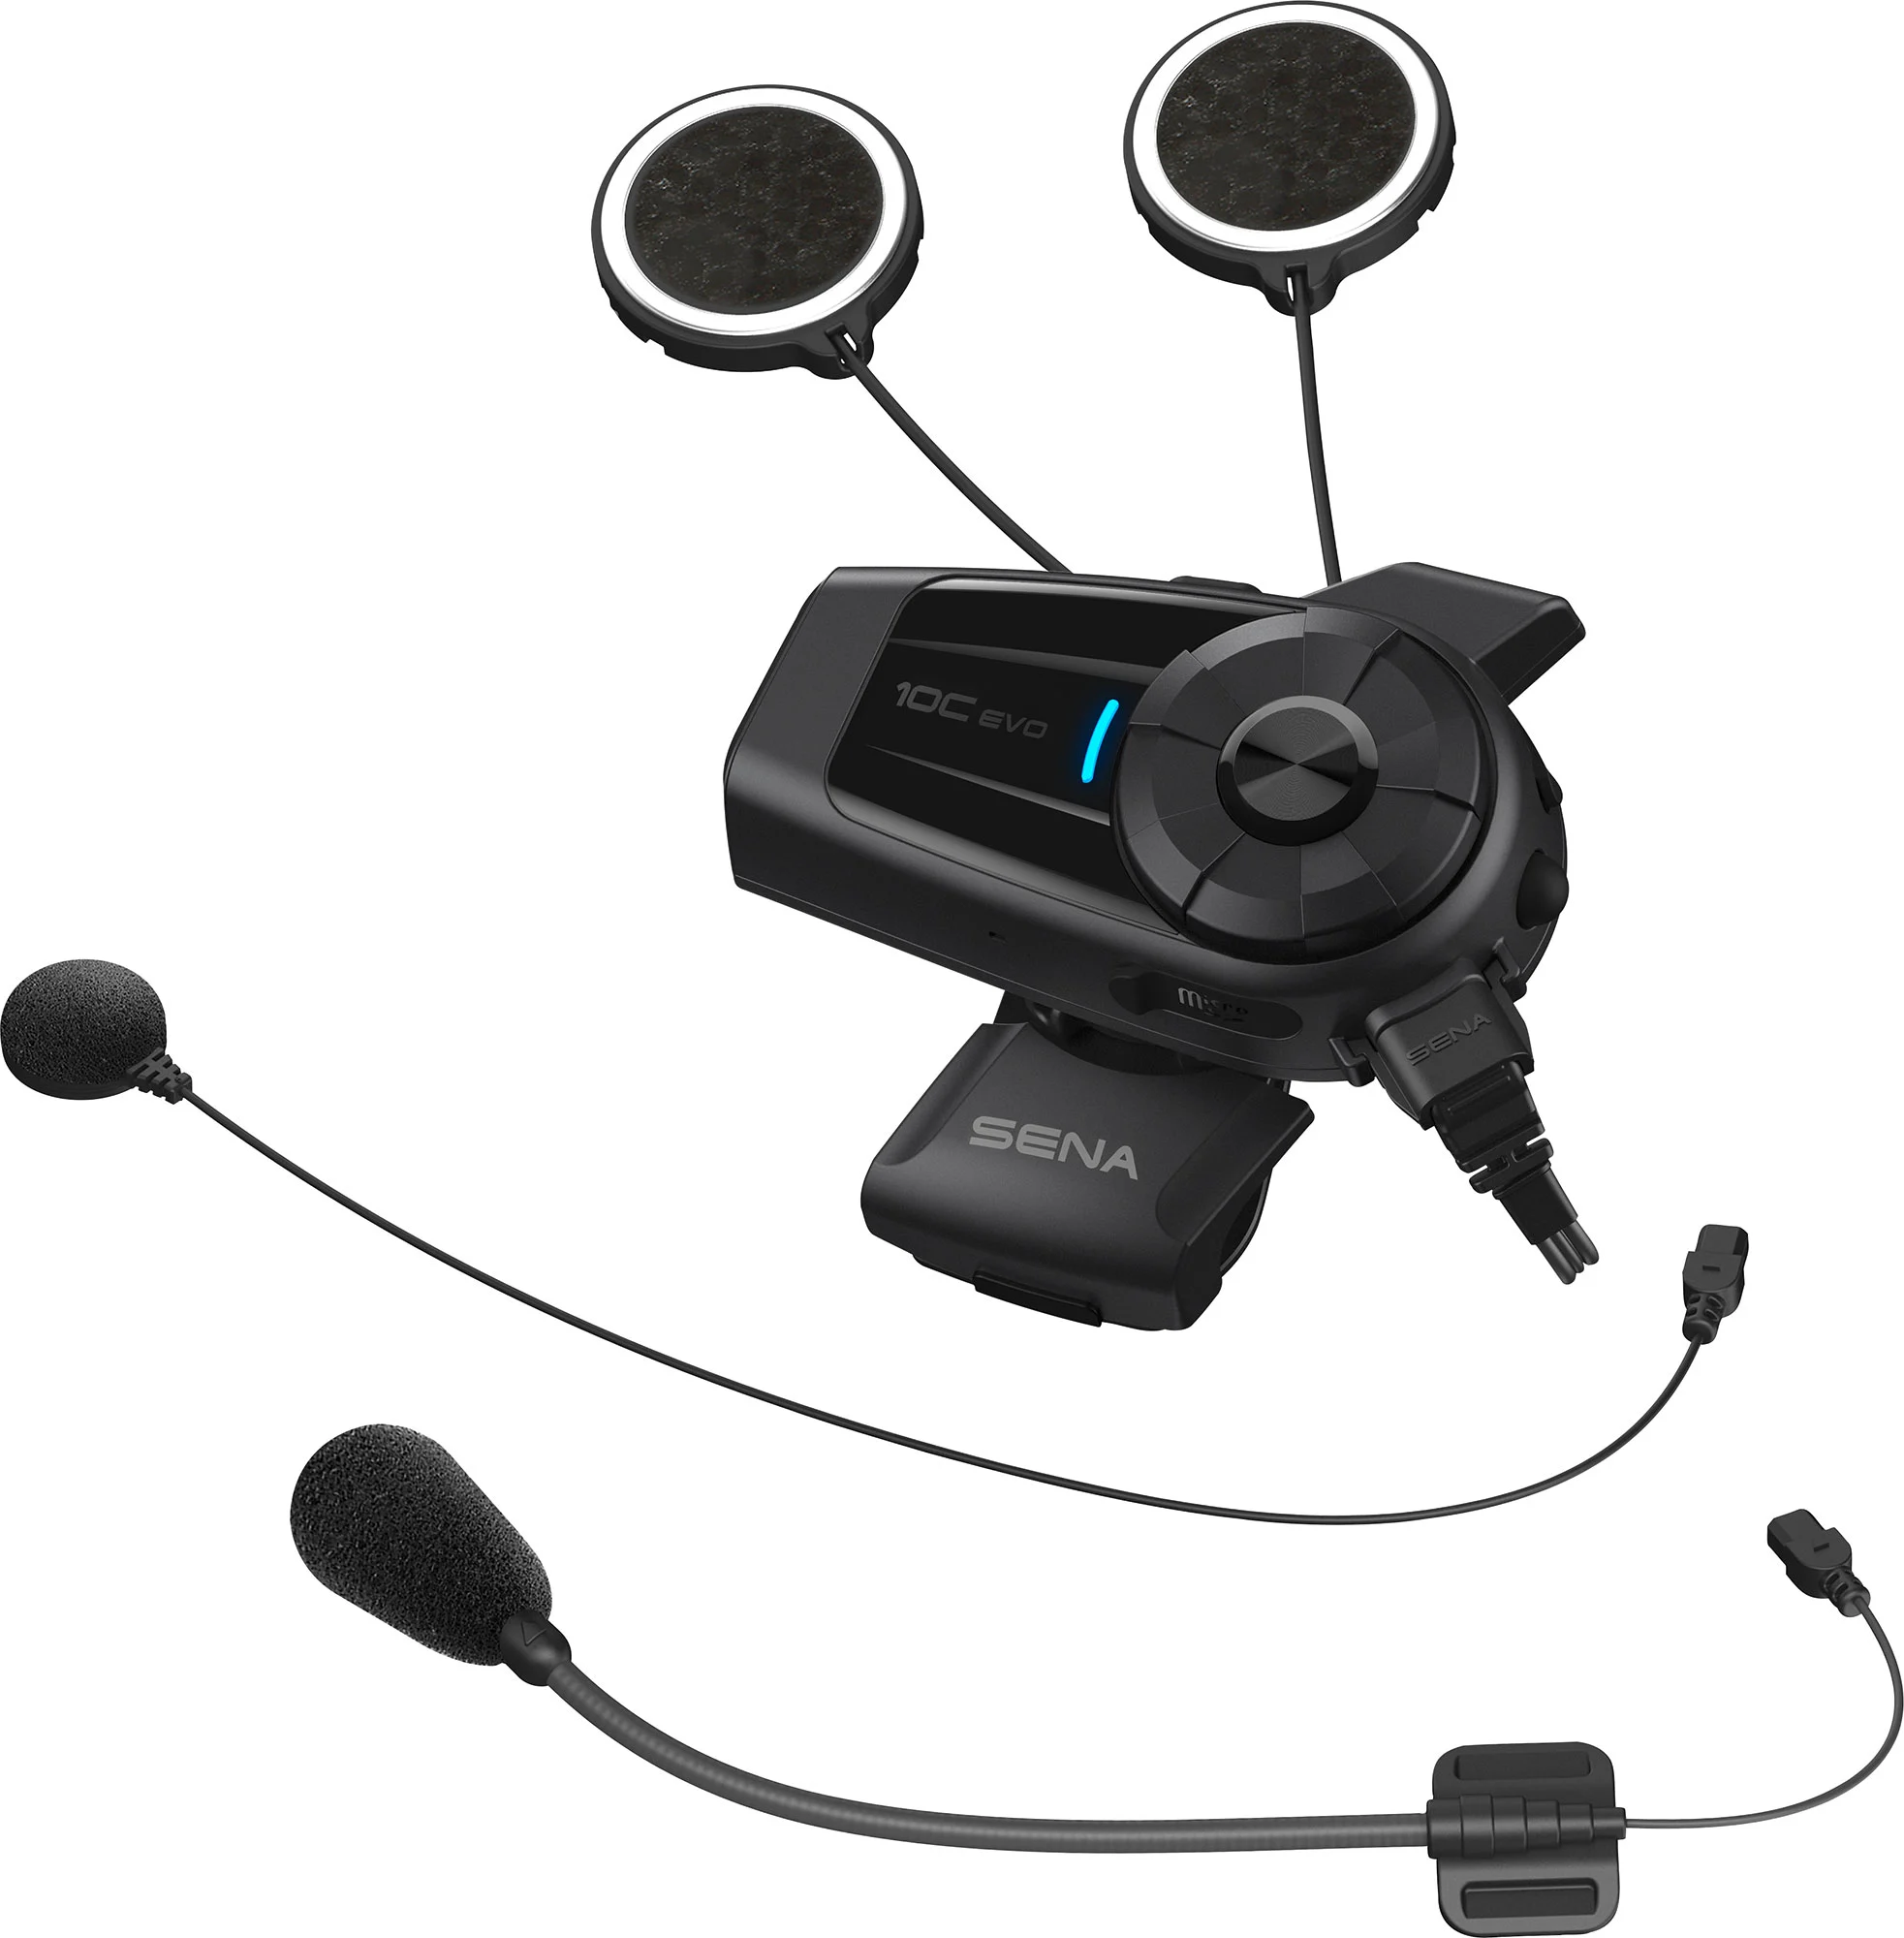 Sena - Système de communication et caméra 10C Pro